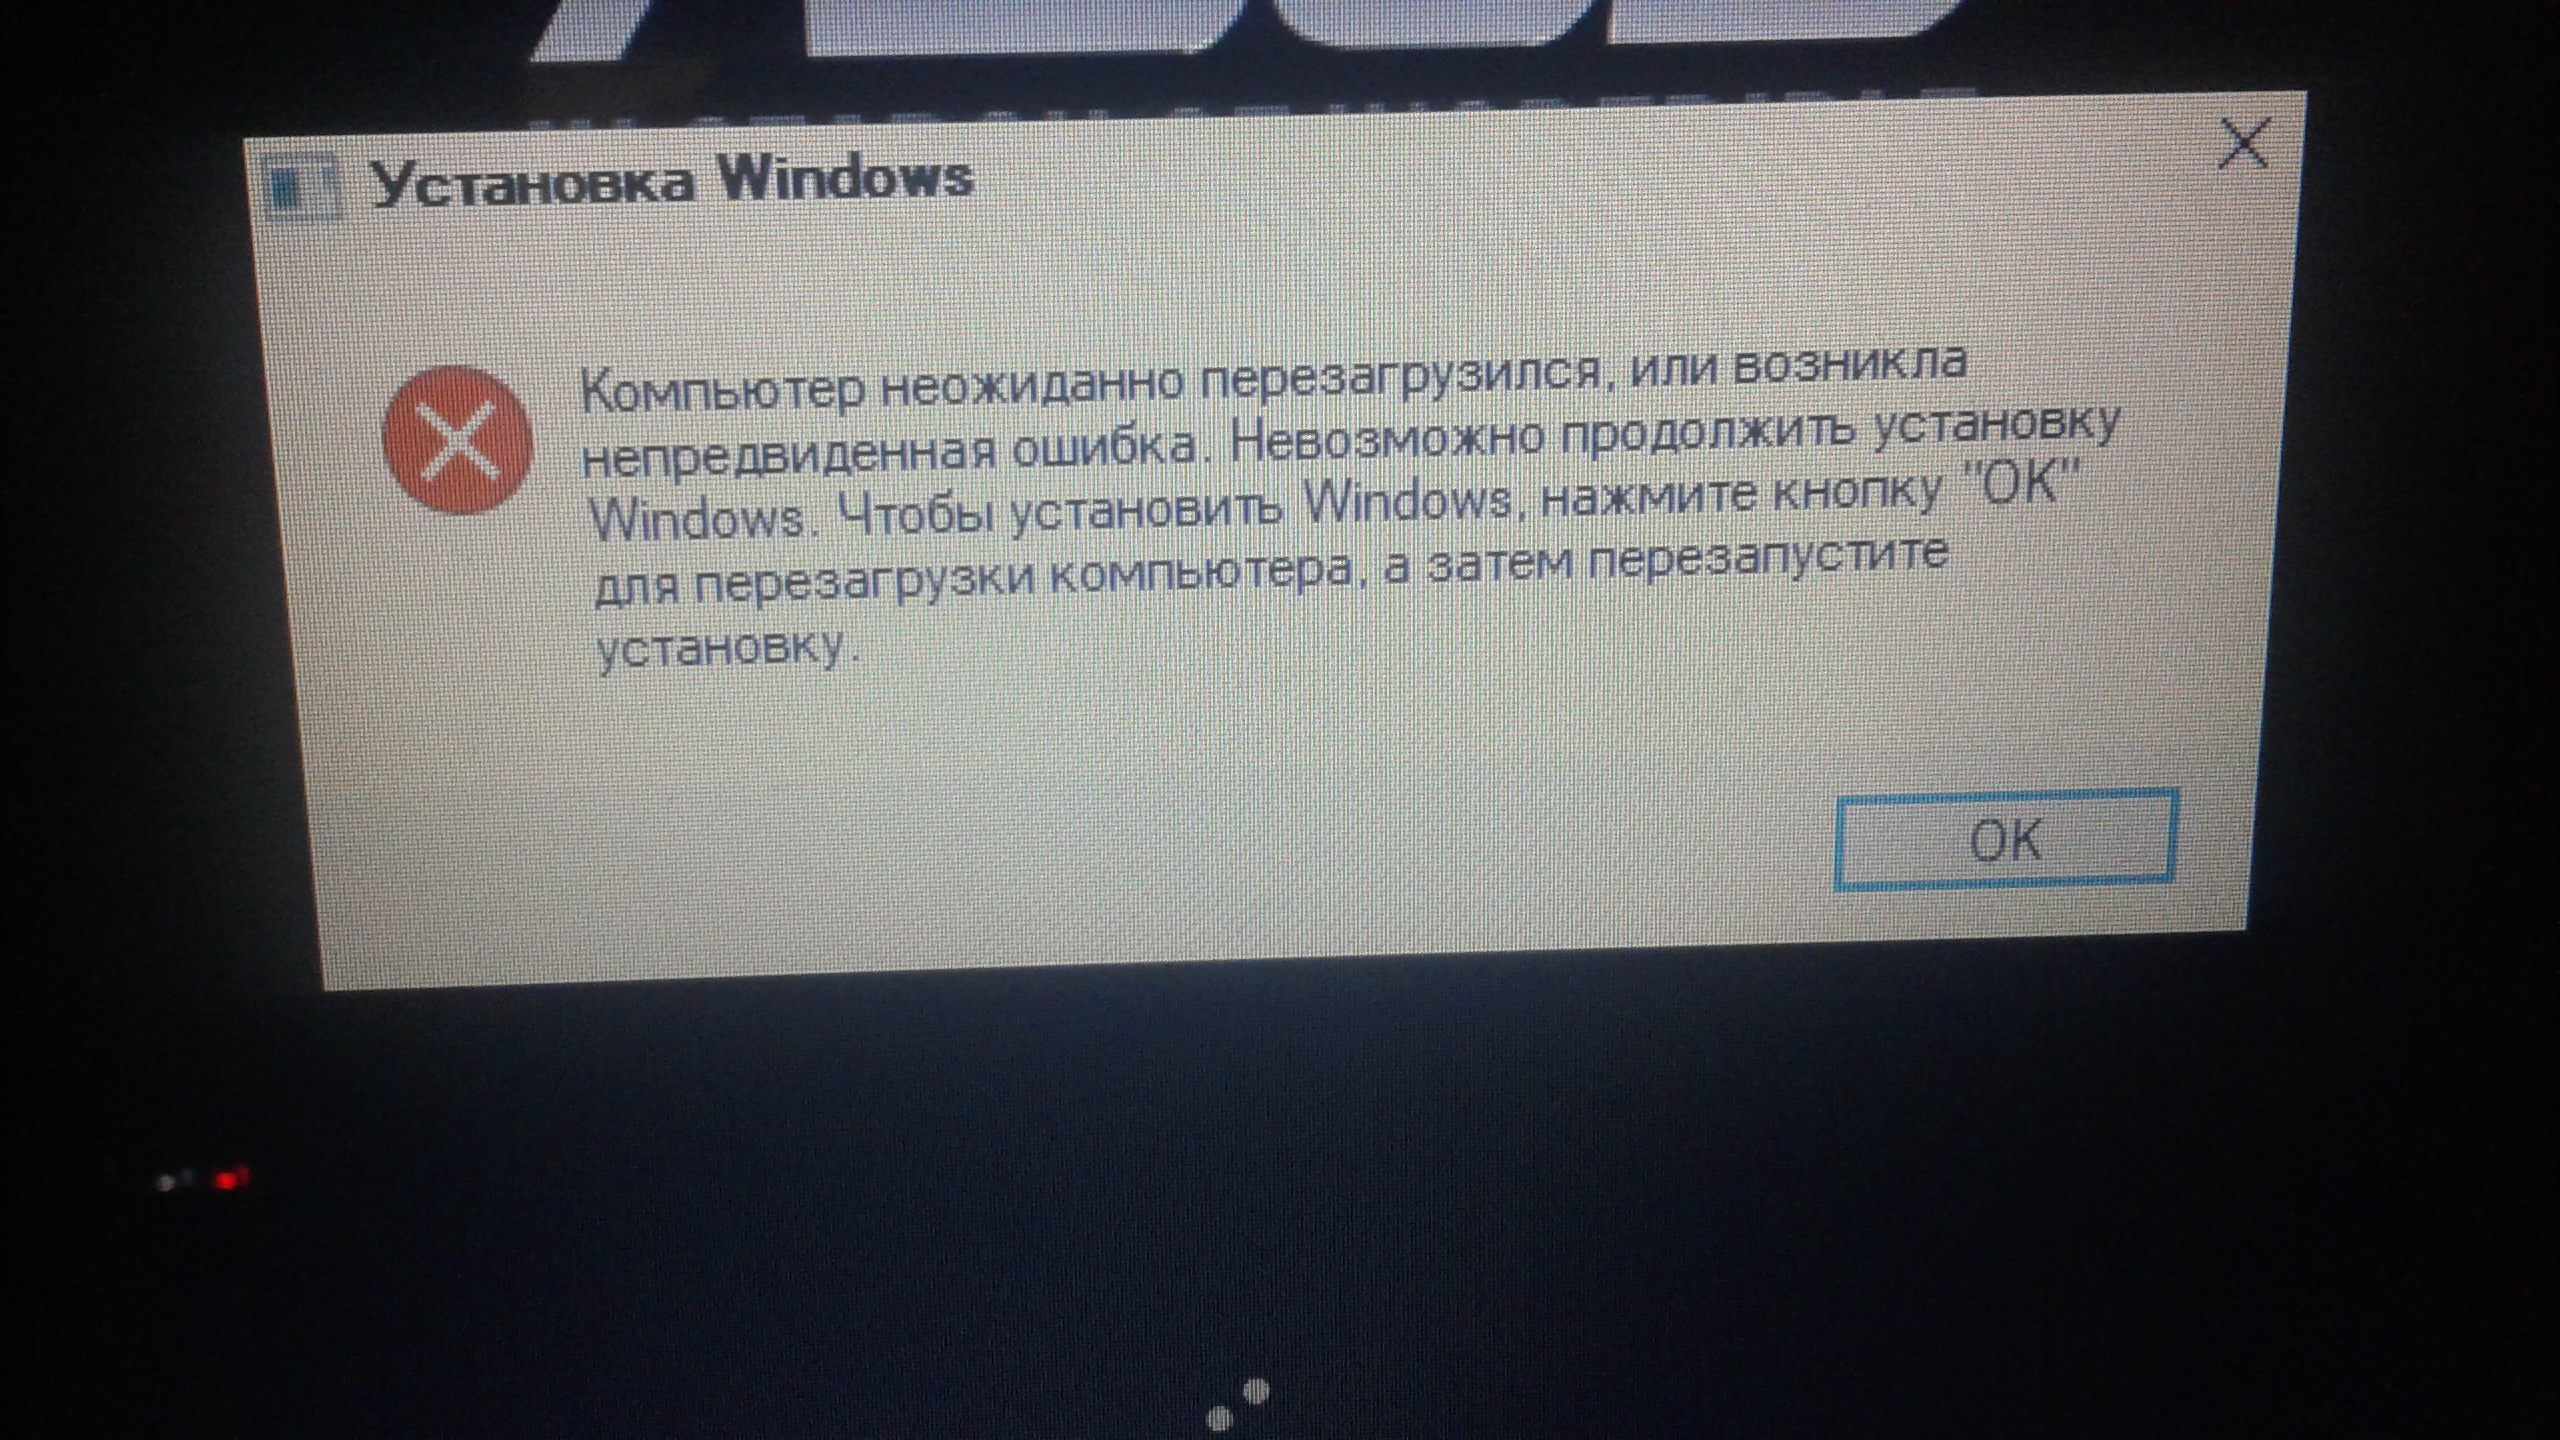 Непредвиденная ошибка 007 клуб романтики. Возникла непредвиденная ошибка Windows. Невозможно продолжить установку Windows. Windows 7 компьютер неожиданно перезагрузился.